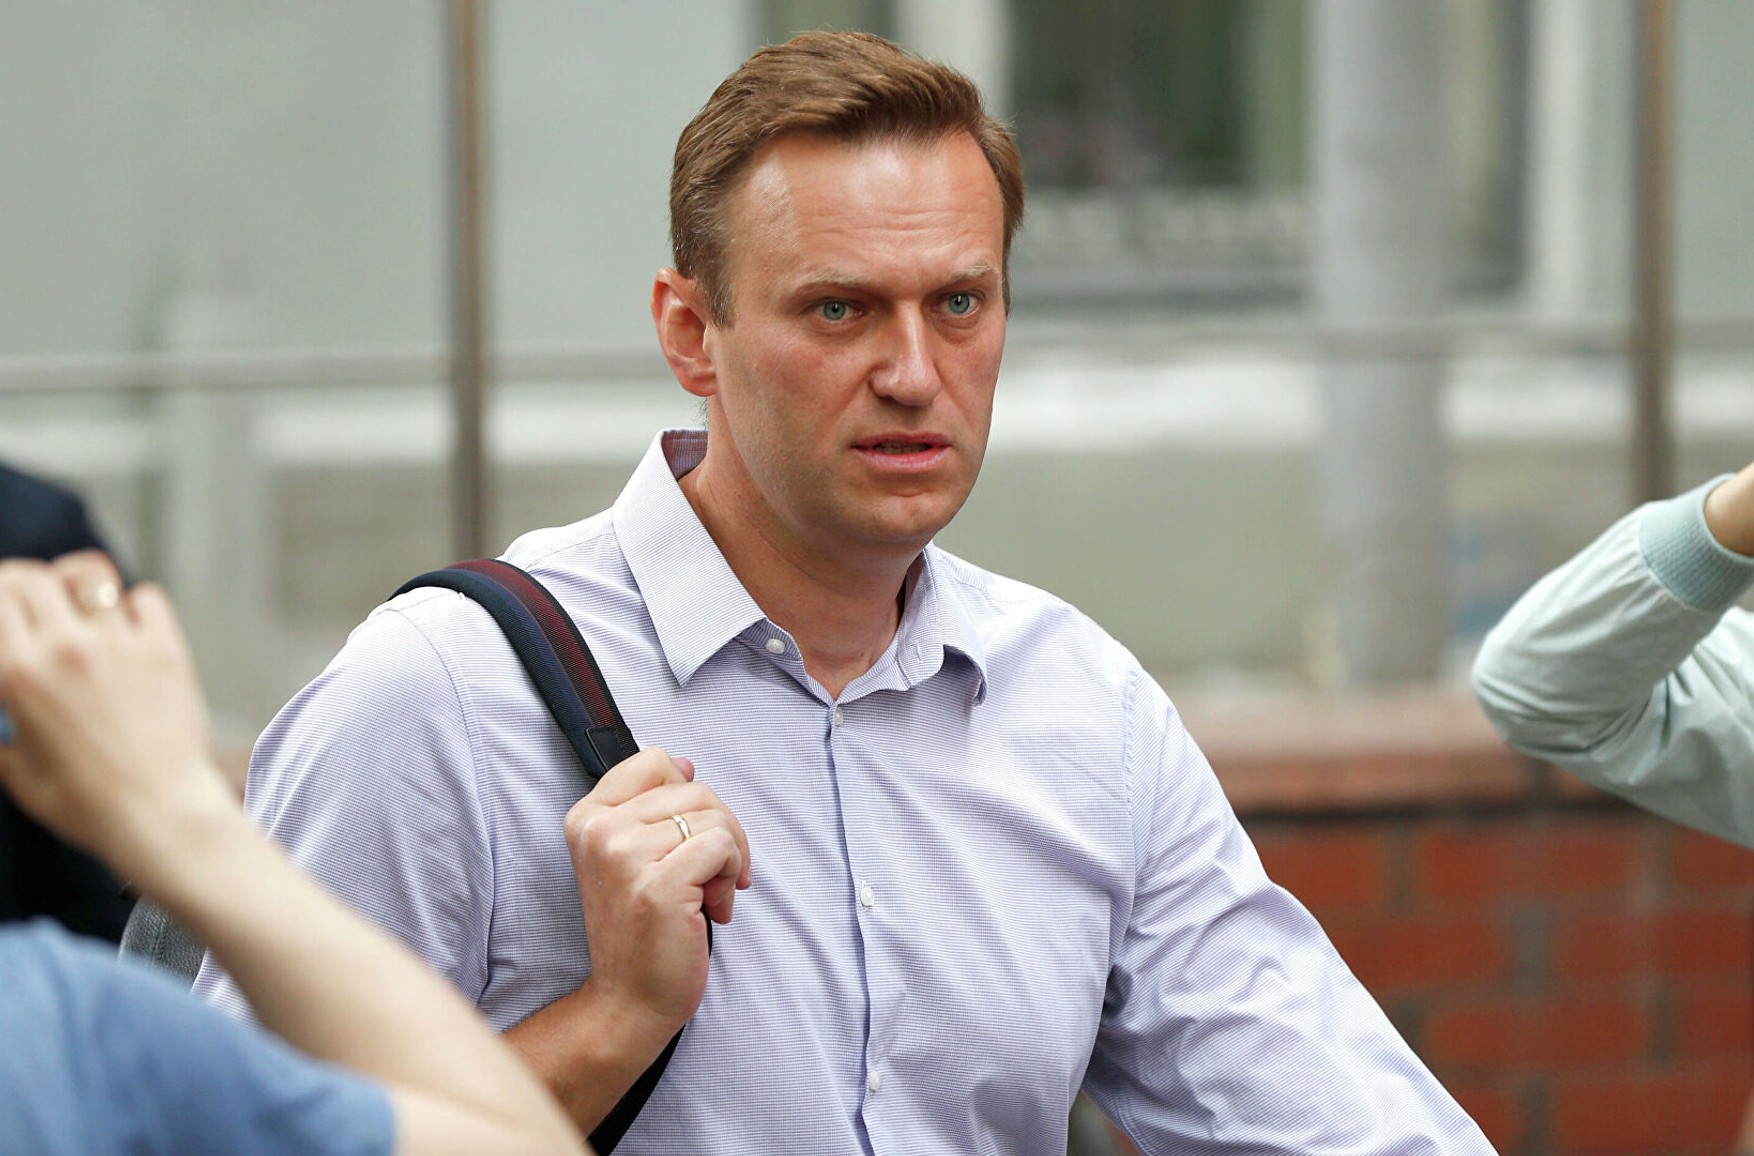 Рейтинг схвалення Навального за рік зріс удвічі - до 20% - опитування «Левада-центру»